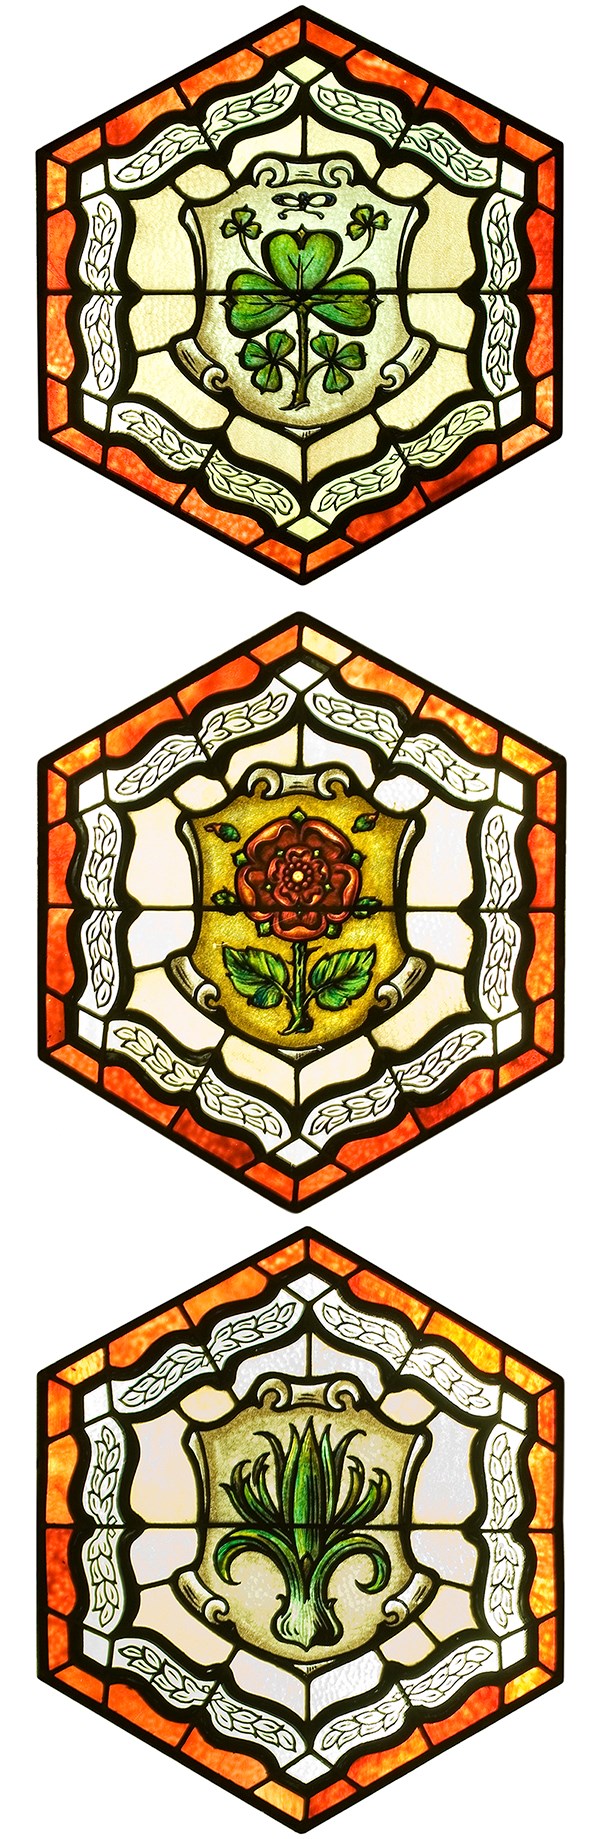 Parmi les symboles qu’on retrouve au plafond, on compte le trèfle irlandais, la rose Tudor et le poireau gallois.